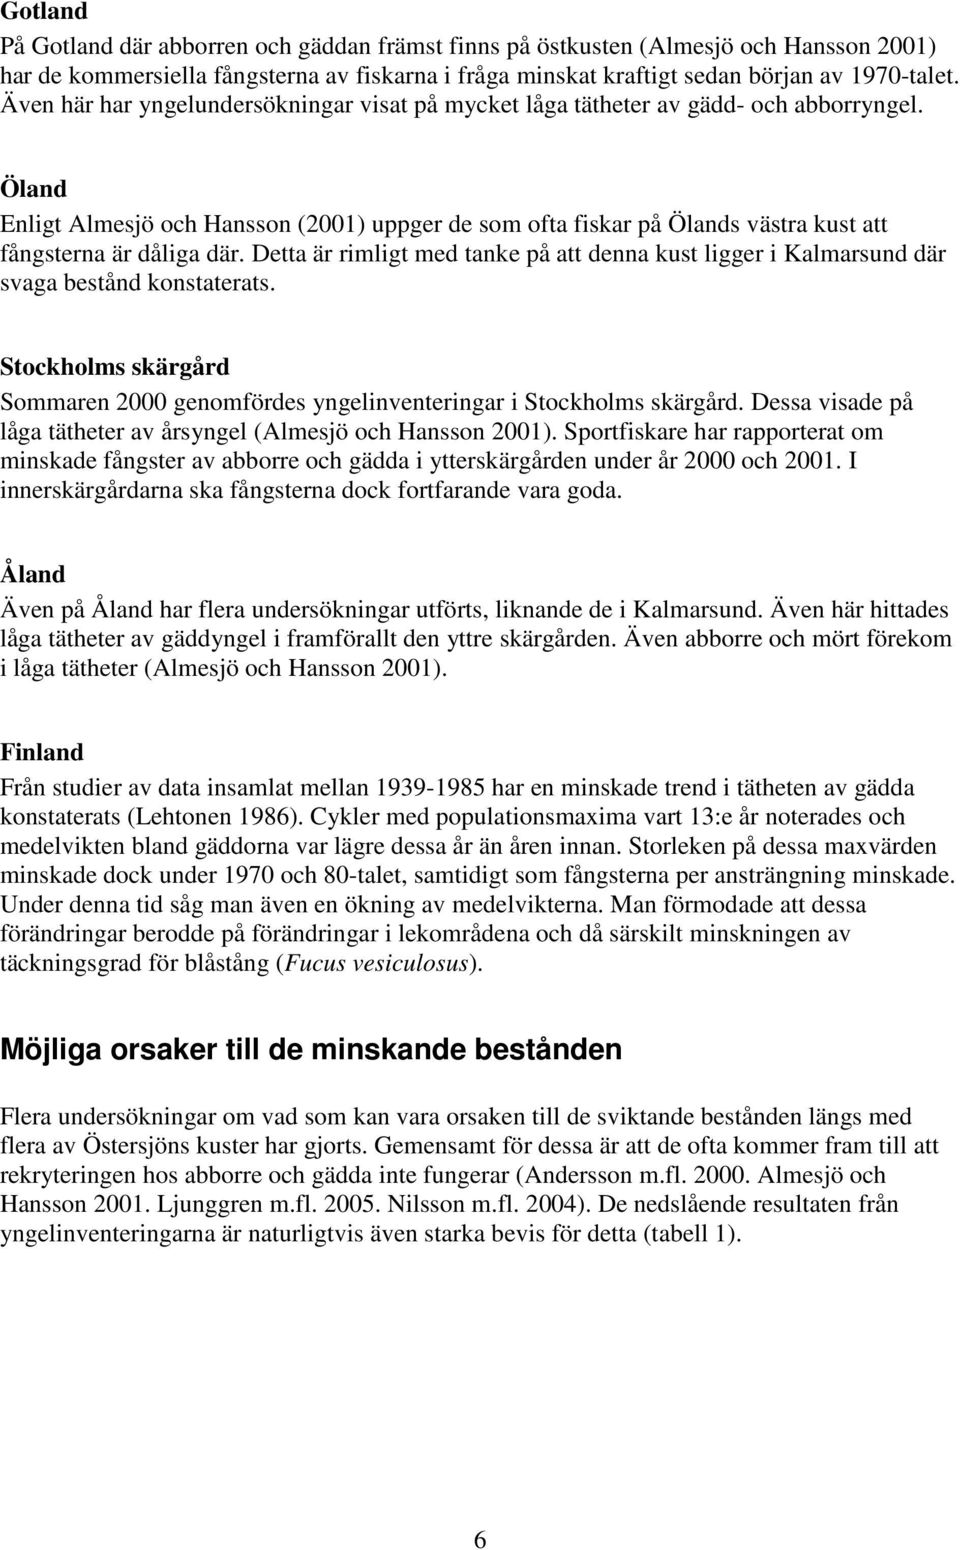 Öland Enligt Almesjö och Hansson (2001) uppger de som ofta fiskar på Ölands västra kust att fångsterna är dåliga där.